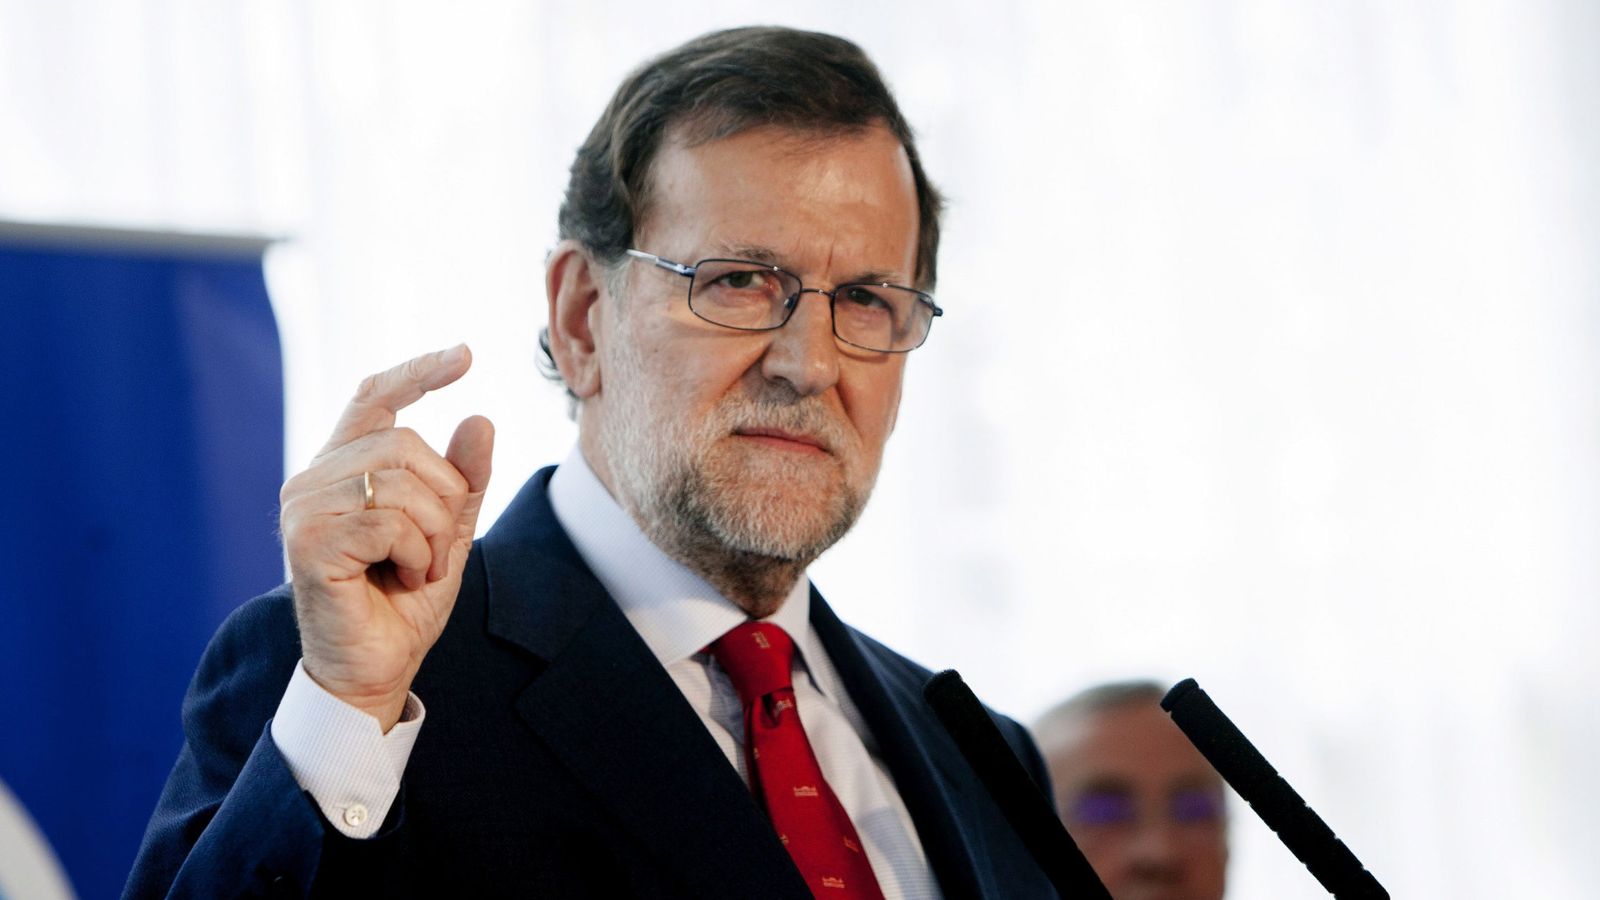 Foto: El presidente del Gobierno en funciones, Mariano Rajoy, durante su intervención en un almuerzo este lunes en Badajoz (EFE)